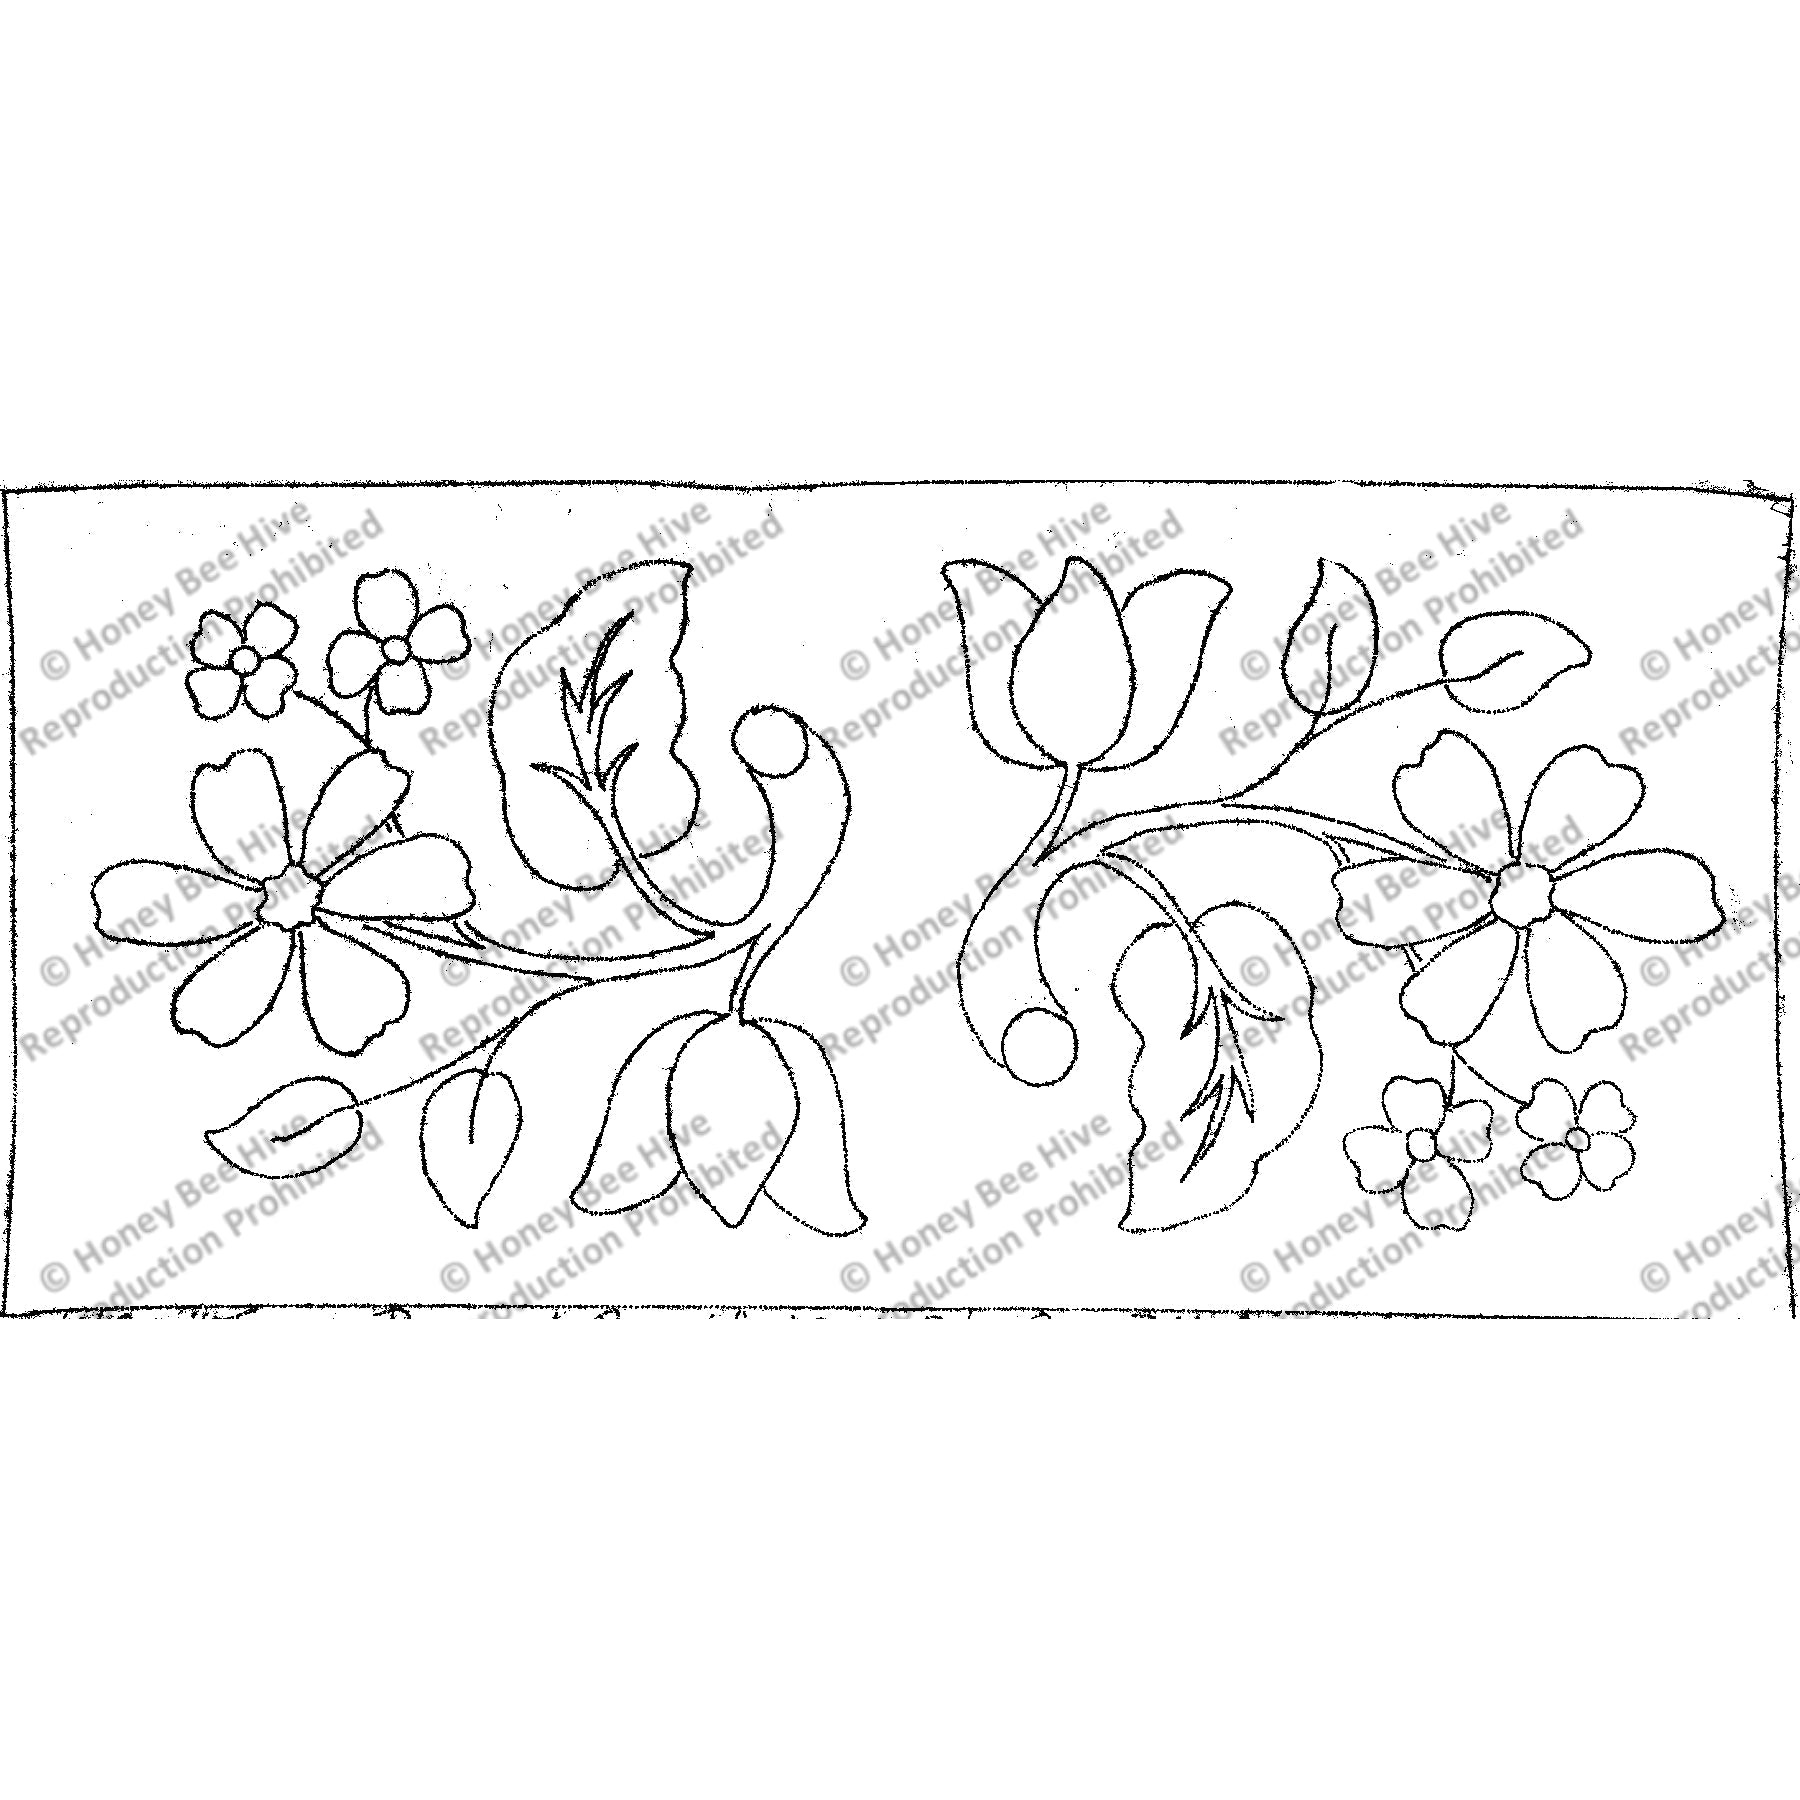 Twin Bouquet, rug hooking pattern